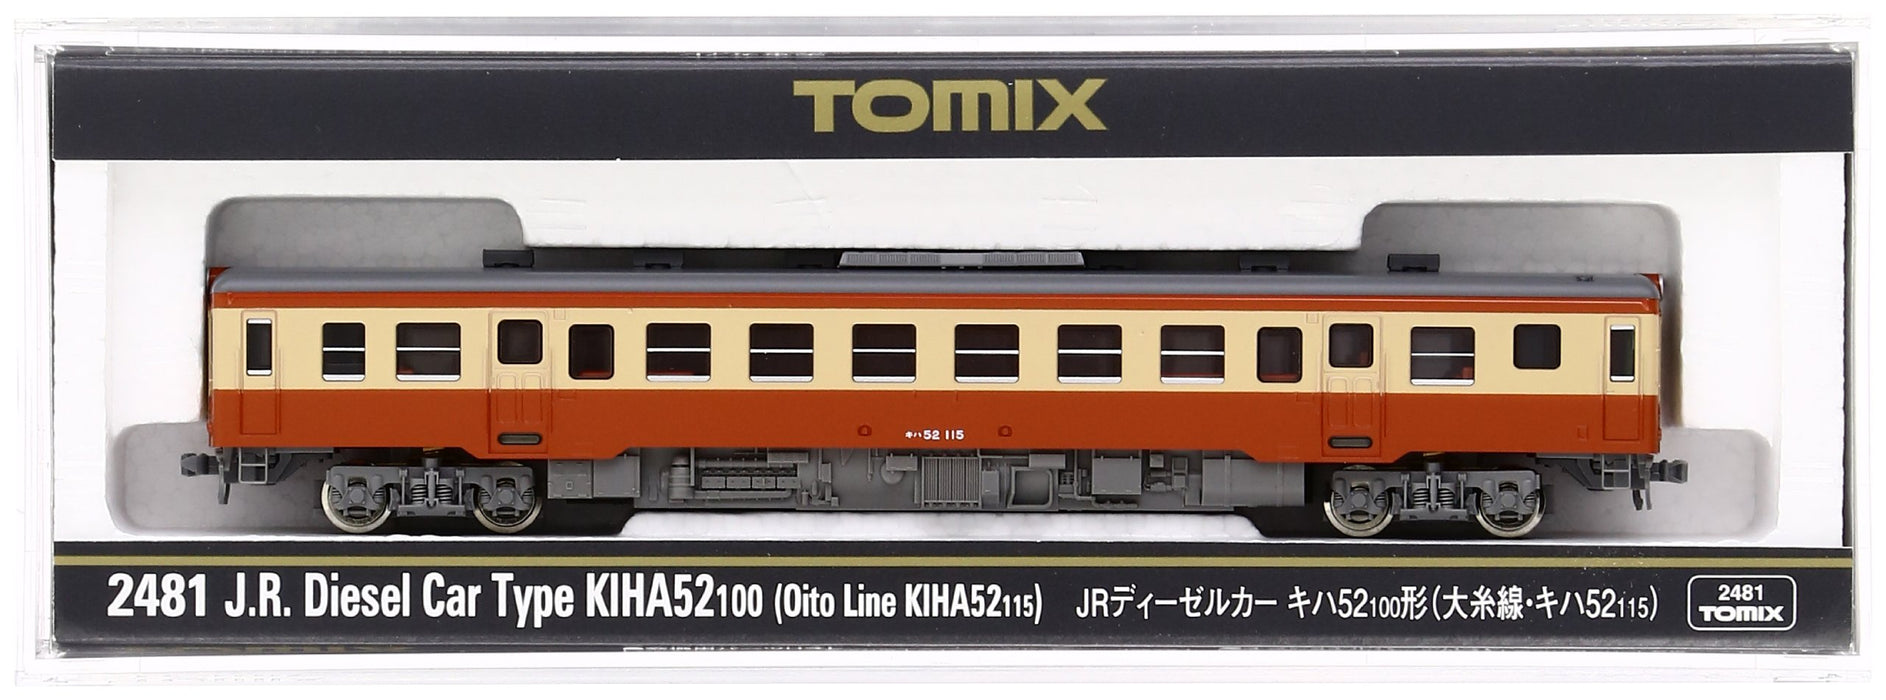 Tomytec Tomix N Gauge Kiha52-100 Oito Line Diesel Railway Model Car 115 2481